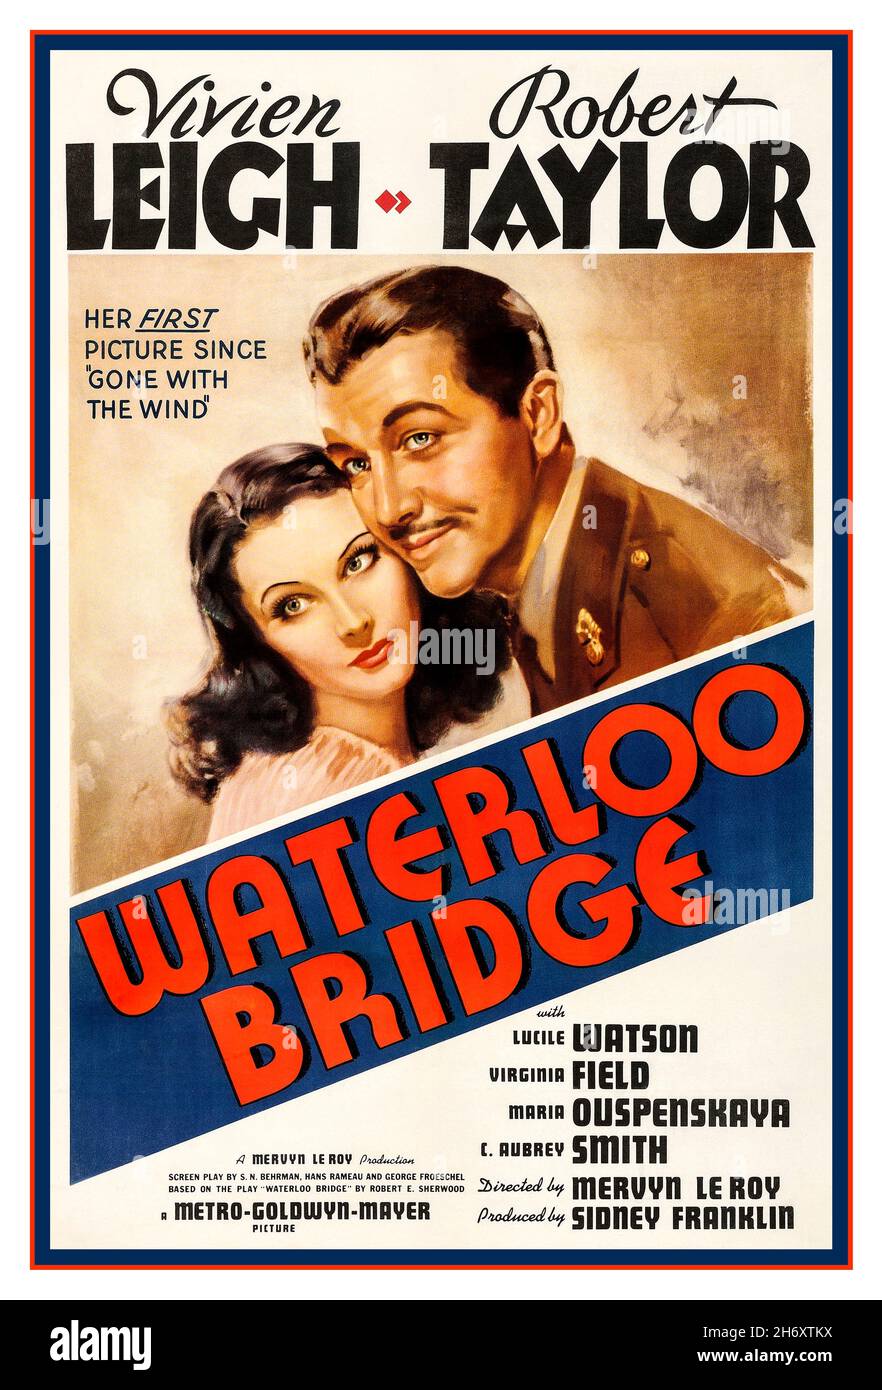 Vintage Movie Filmplakat Waterloo Bridge mit Vivien Leigh und Robert Taylor, ist 1940 Remake des amerikanischen Dramatikfilms Waterloo Bridge aus dem Jahr 1931, der aus dem Theaterstück Waterloo Bridge aus dem Jahr 1930 stammt. In einer ausführlichen Rückblende erzählt sie die Geschichte eines Tänzers und eines Armeekapitäns, die sich zufällig auf der Waterloo Bridge treffen. Der Film wurde von Metro-Goldwyn-Mayer gedreht, unter der Regie von Mervyn LeRoy und von Sidney Franklin und Mervyn LeRoy produziert. Das Drehbuch ist von S. N. Behrman, Hans Rameau und George Froeschel nach dem Broadway-Drama von Robert E. Sherwood. Die Musik ist von Herbert Stoth Stockfoto